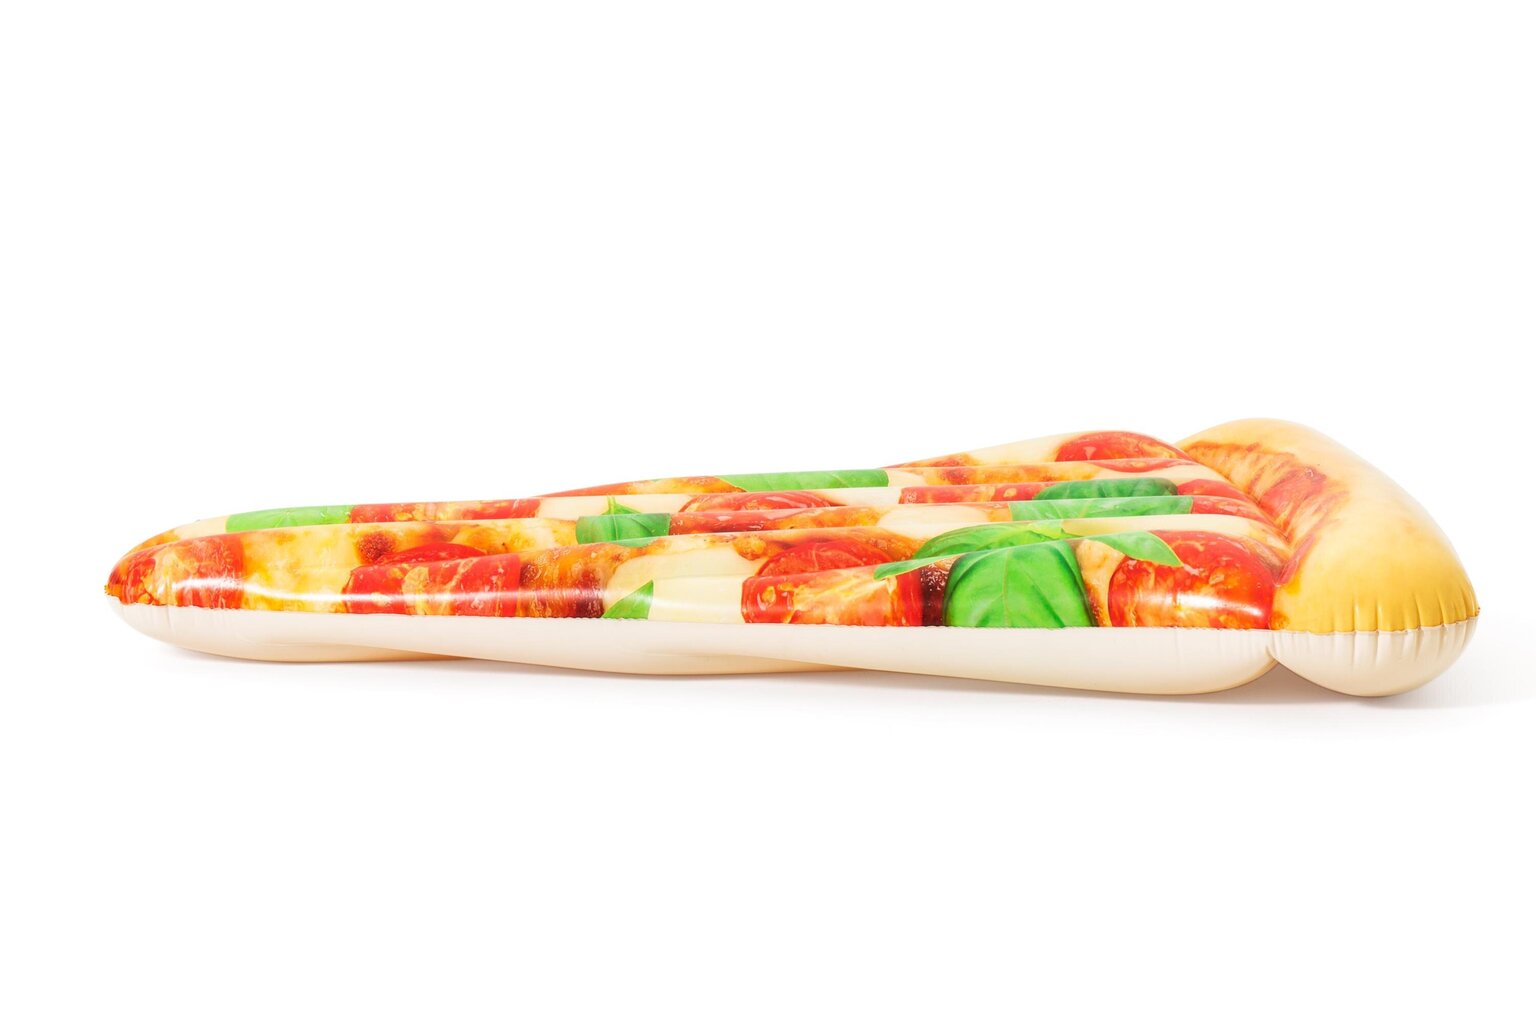 Pripučiamas plaustas Bestway Pizza Party, 188x130 cm kaina ir informacija | Pripučiamos ir paplūdimio prekės | pigu.lt